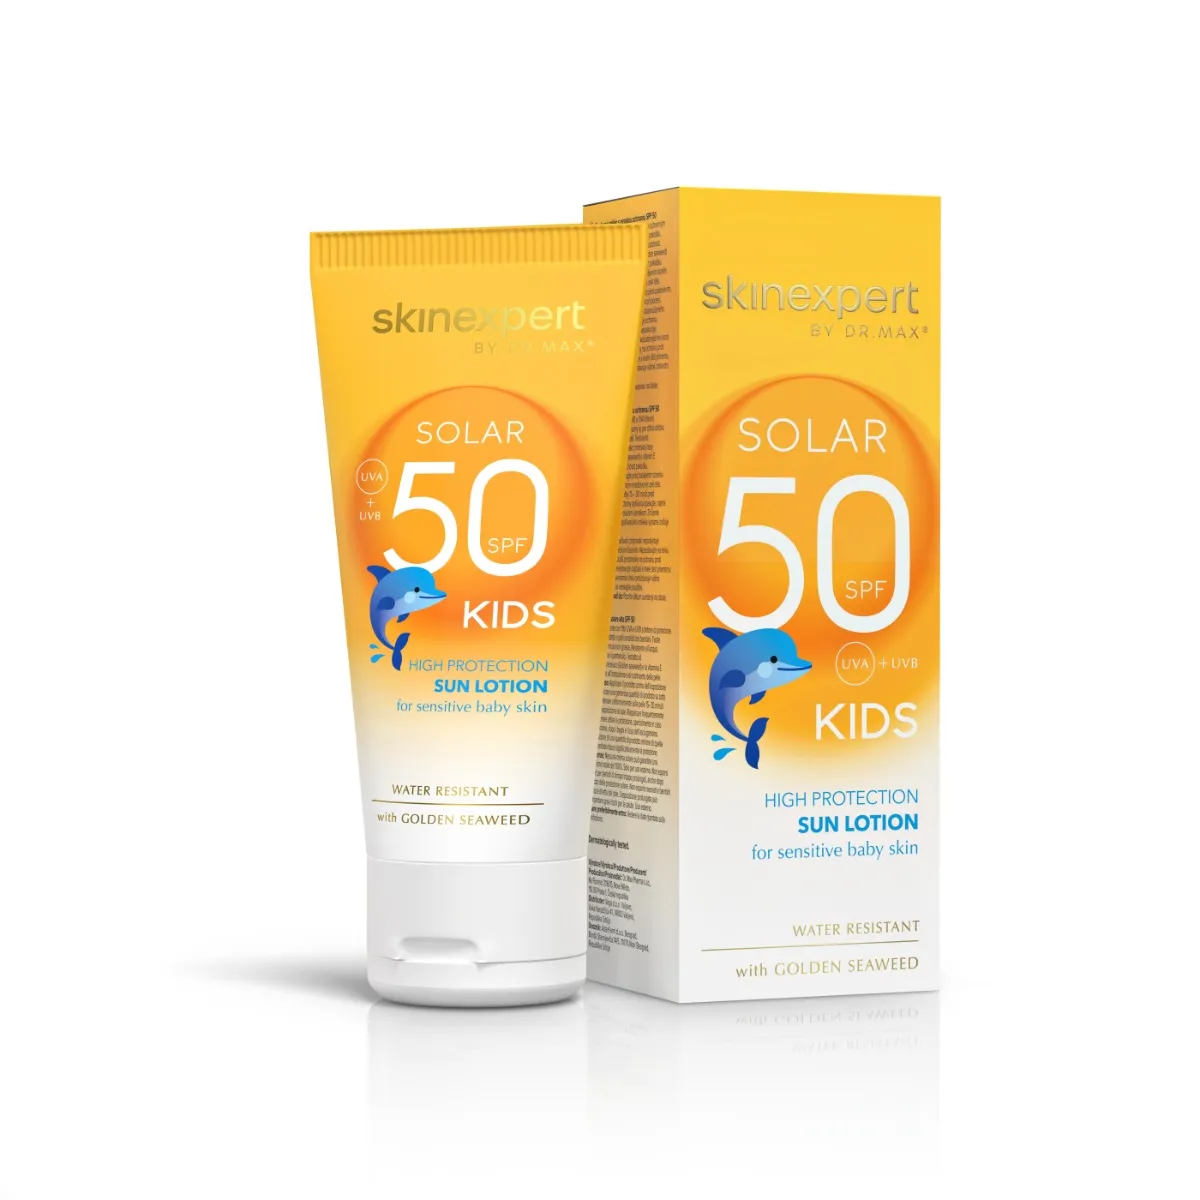 Skinexpert Solar Kids SPF 50 200 ml Protezione solare alta per bambini